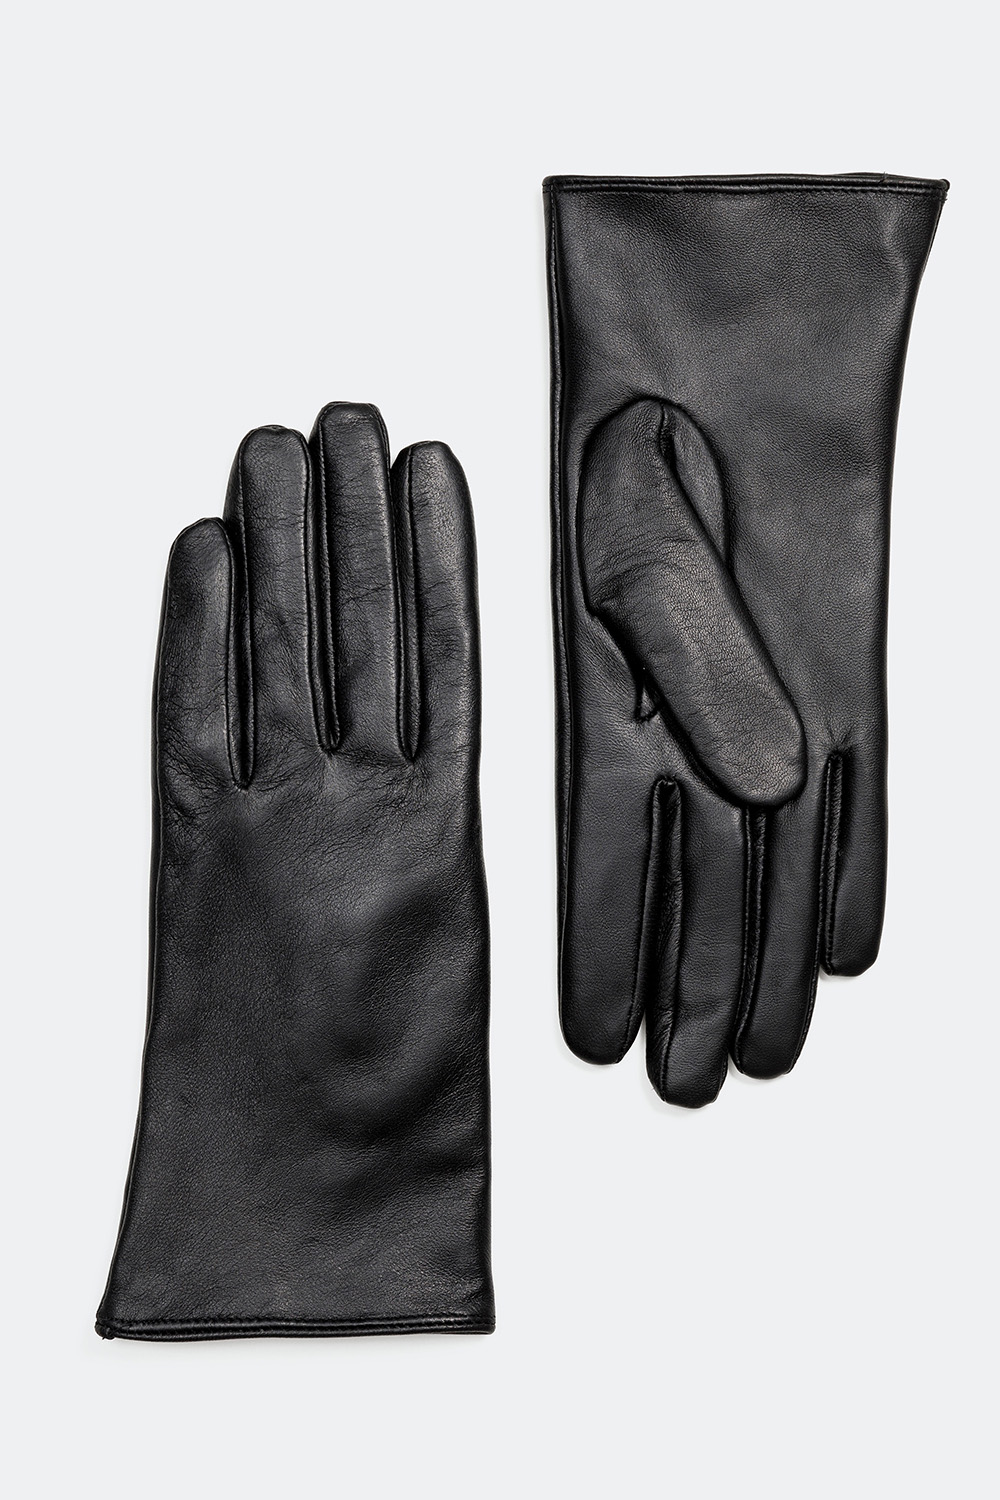 Svarte hansker o ekte skinn med touch-funksjon i gruppen Tilbehør / Skinnhansker hos Glitter (17100034)